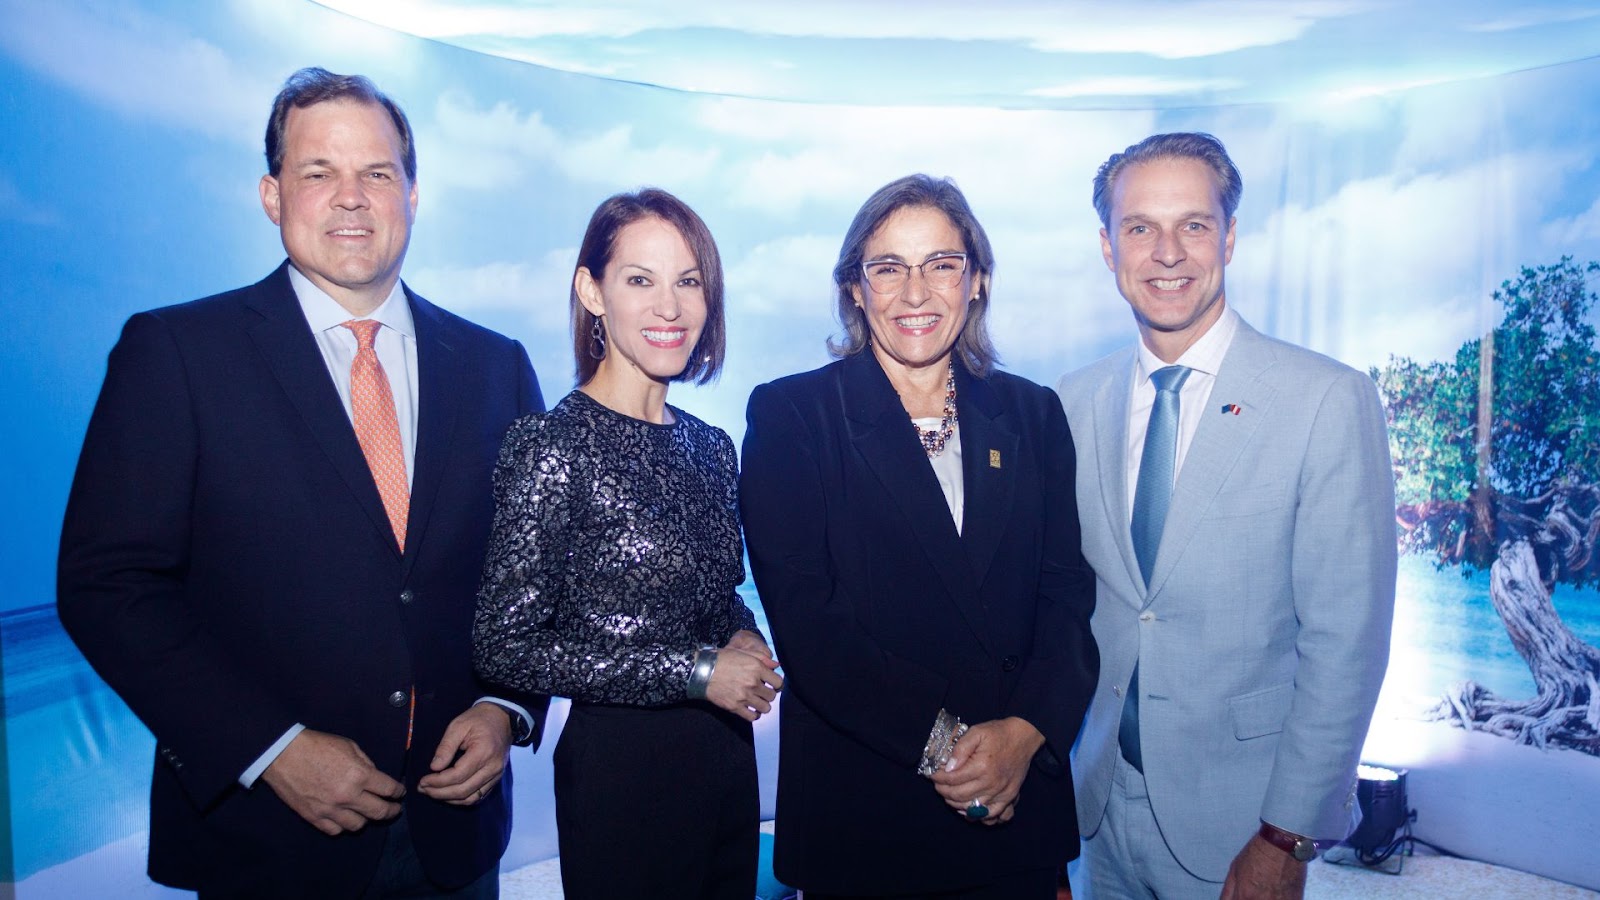 Aruba realizó exitoso evento de celebración de la nueva ruta directa Lima-Aruba en la residencia del embajador del Reino de los Países Bajos